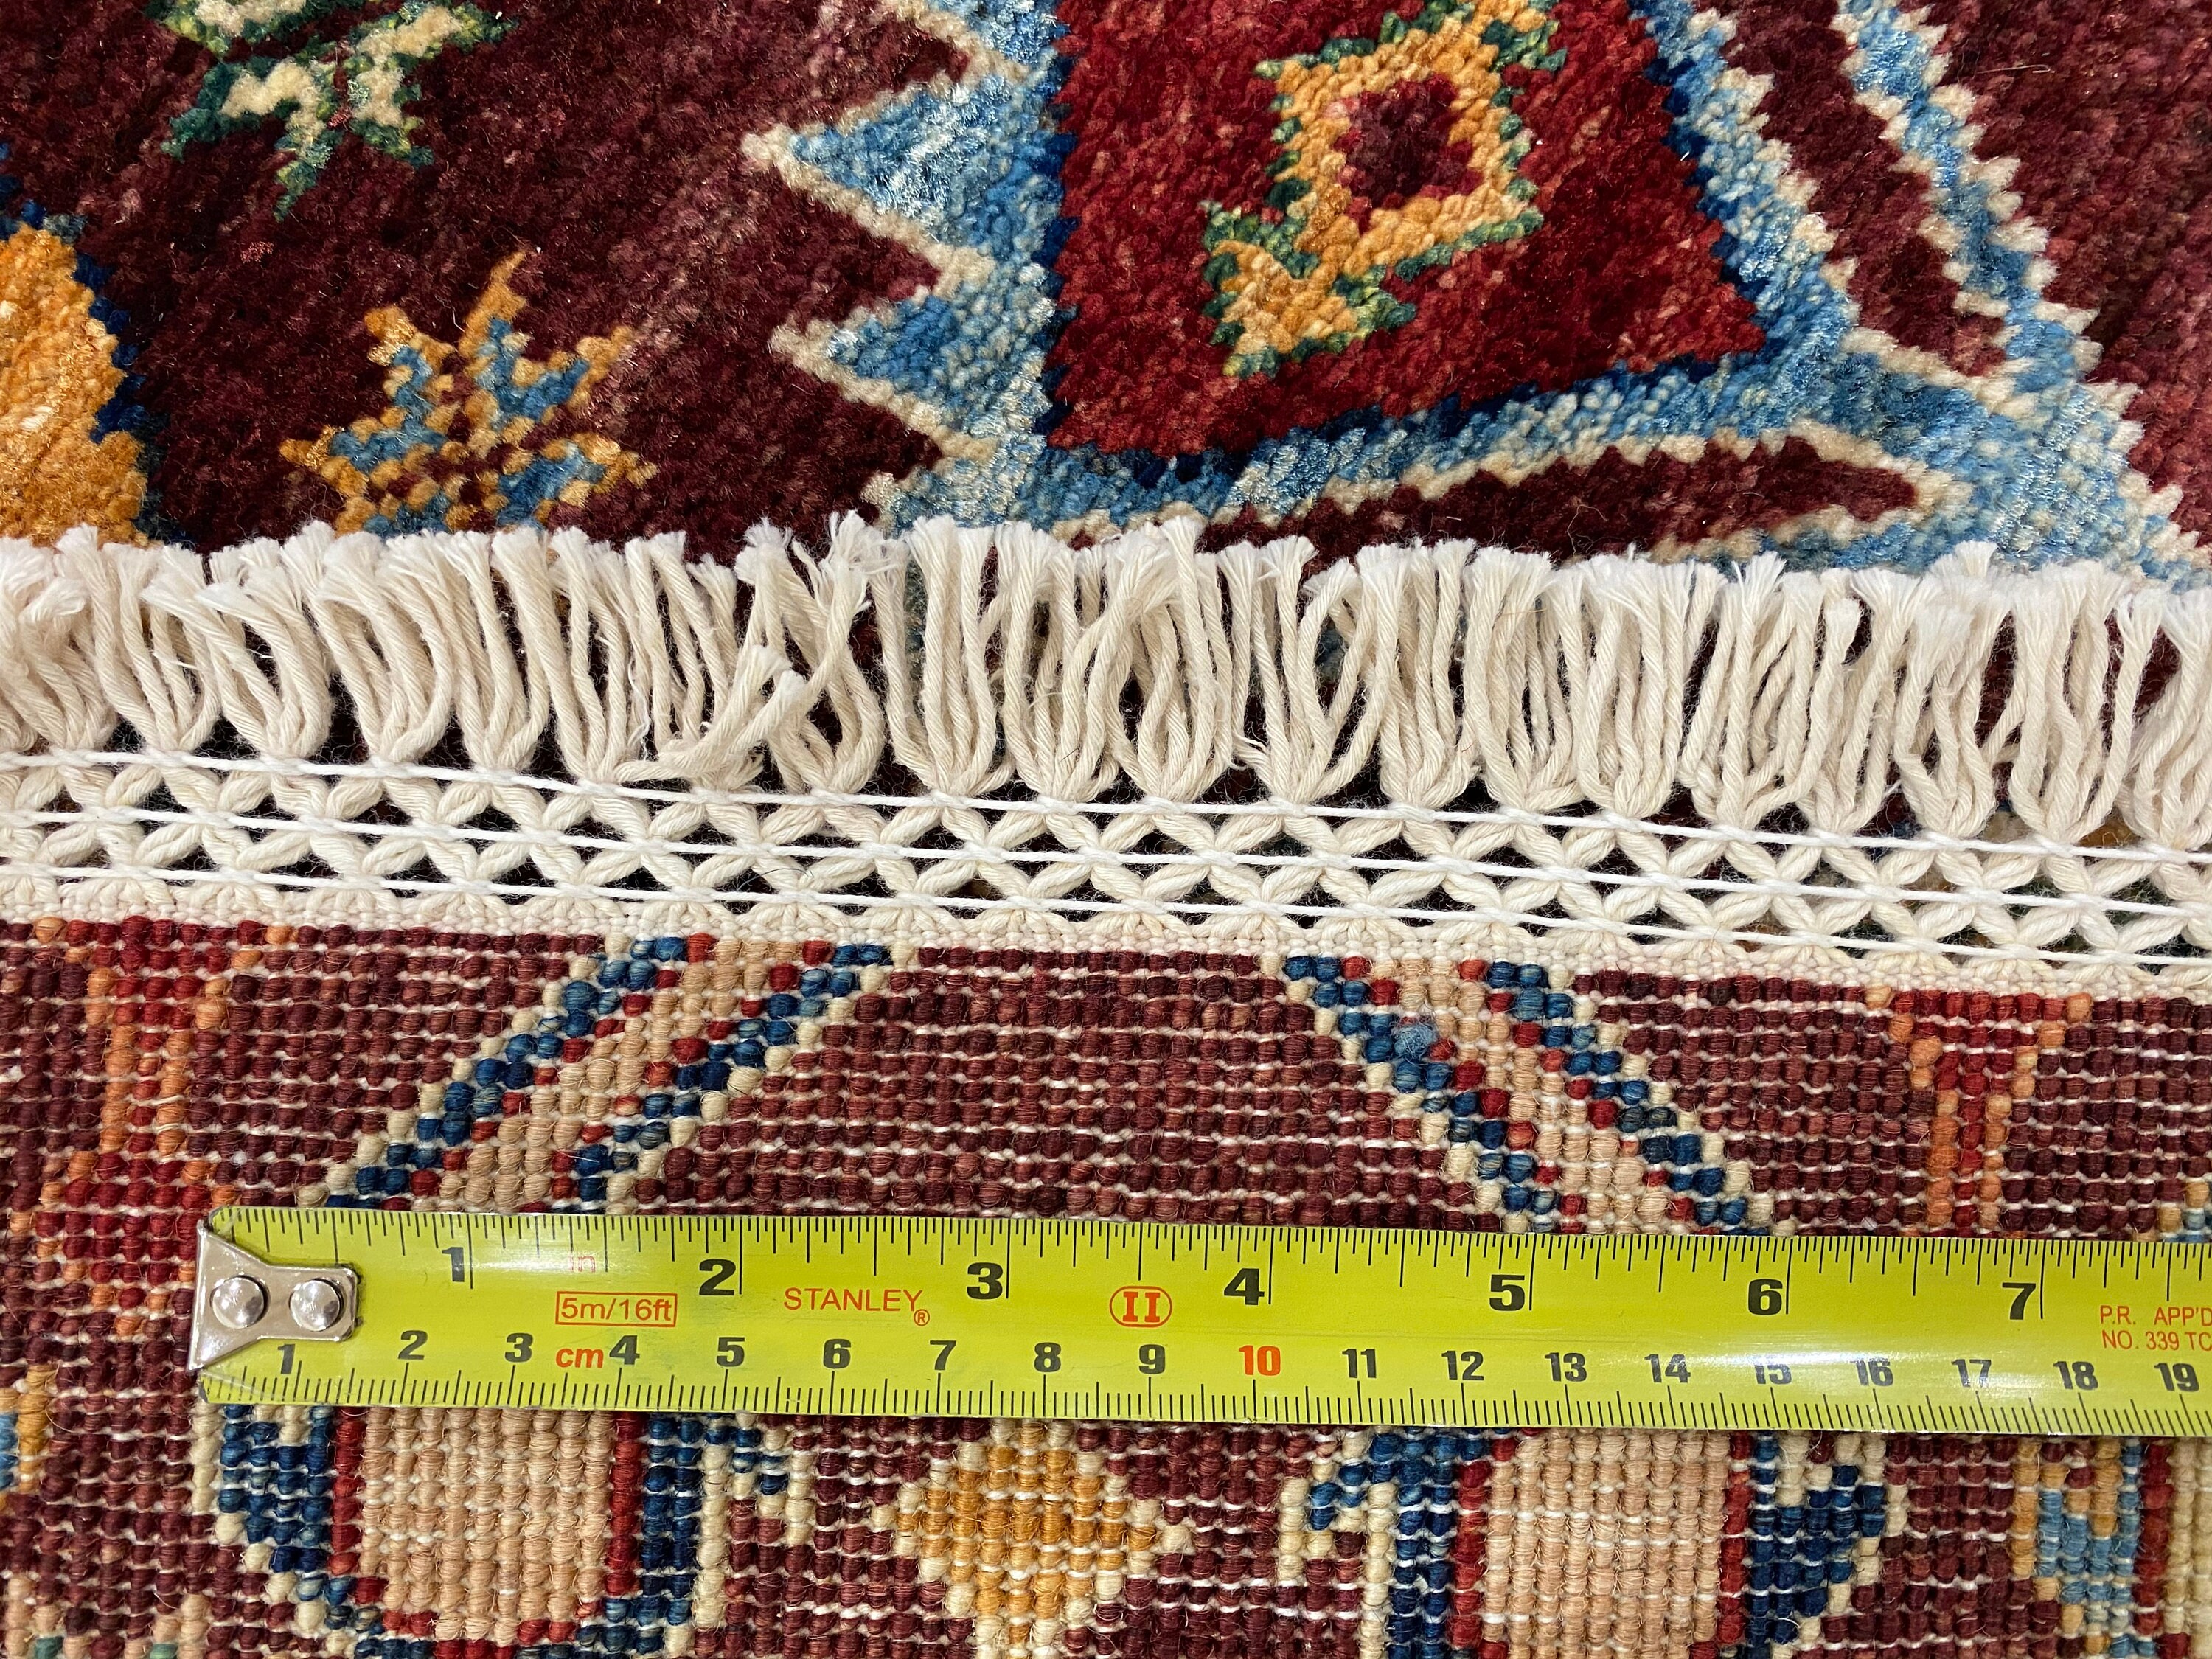 Mamluk design area rug 3'3x4'10